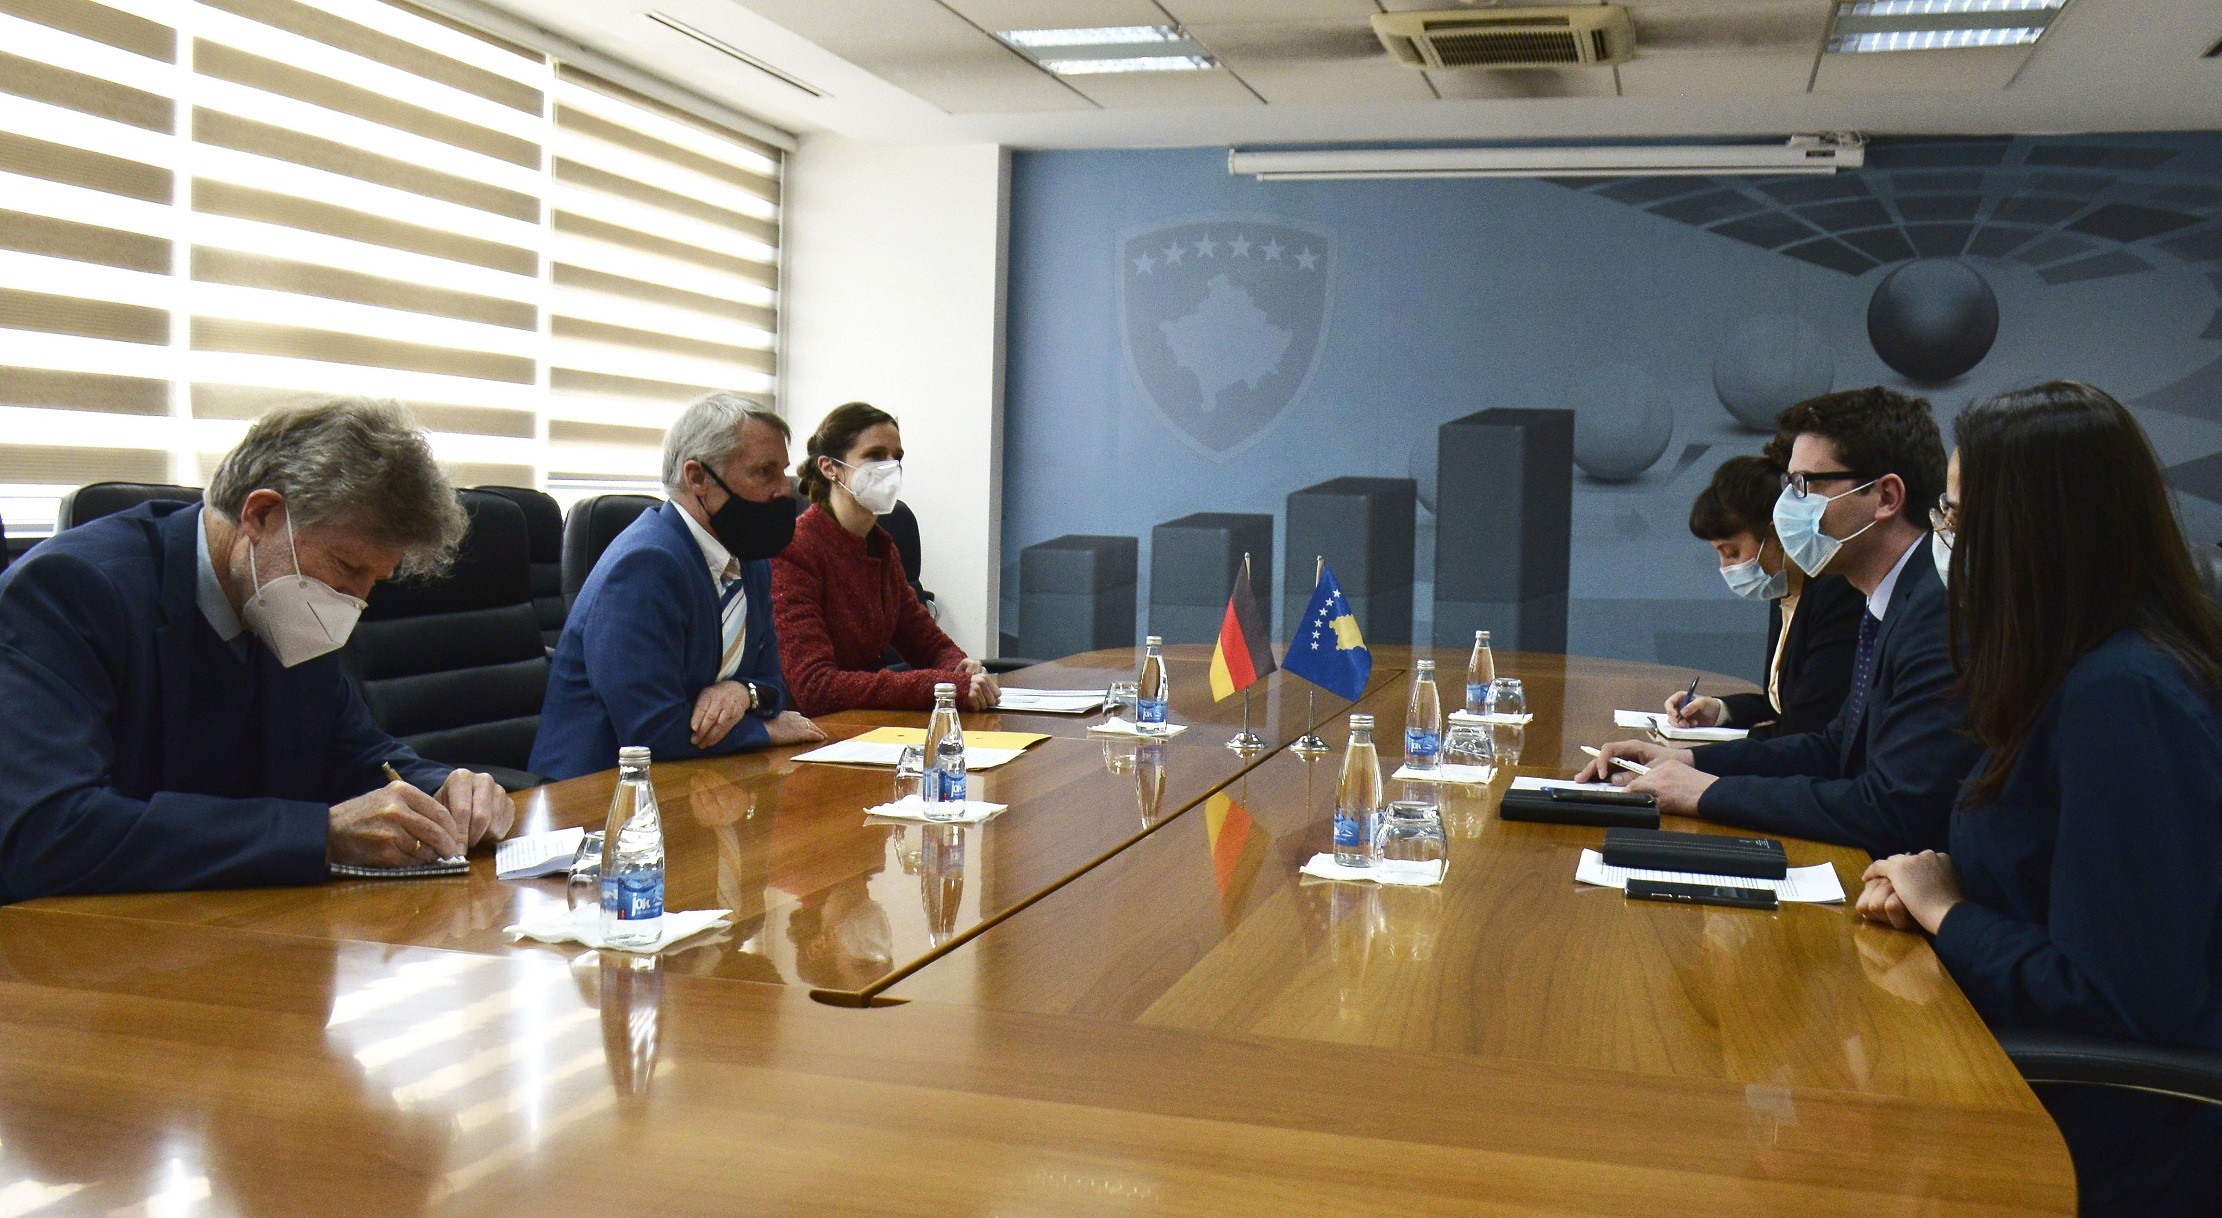  Ambasadori Rohde shpreh mbështetjen e shtetit gjerman për Kosovën